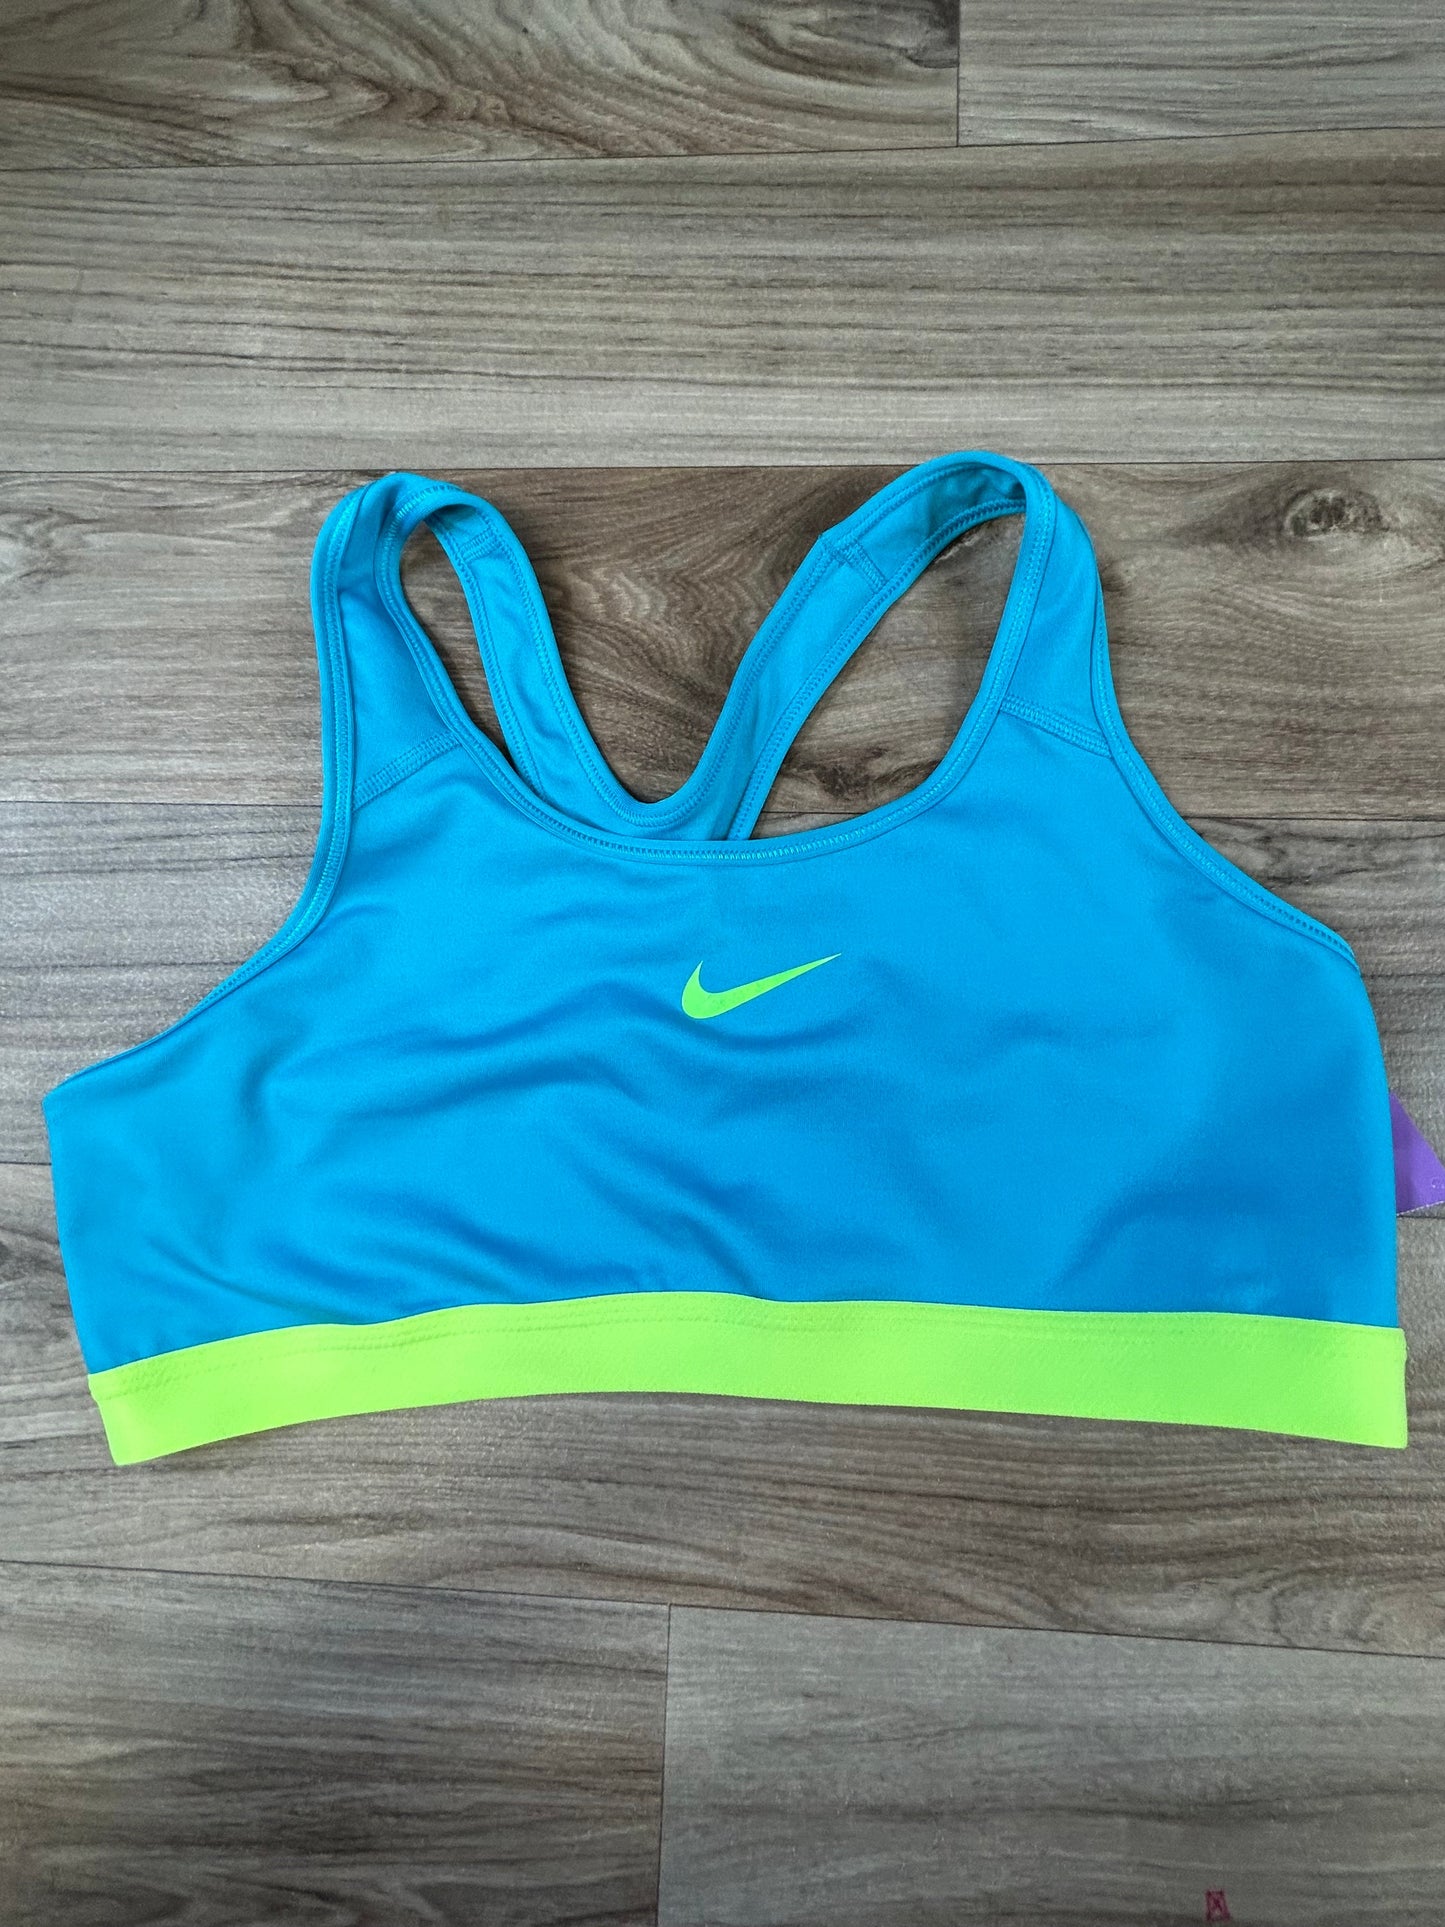 Blue & Green Athletic Bra Nike Apparel, Size Xl